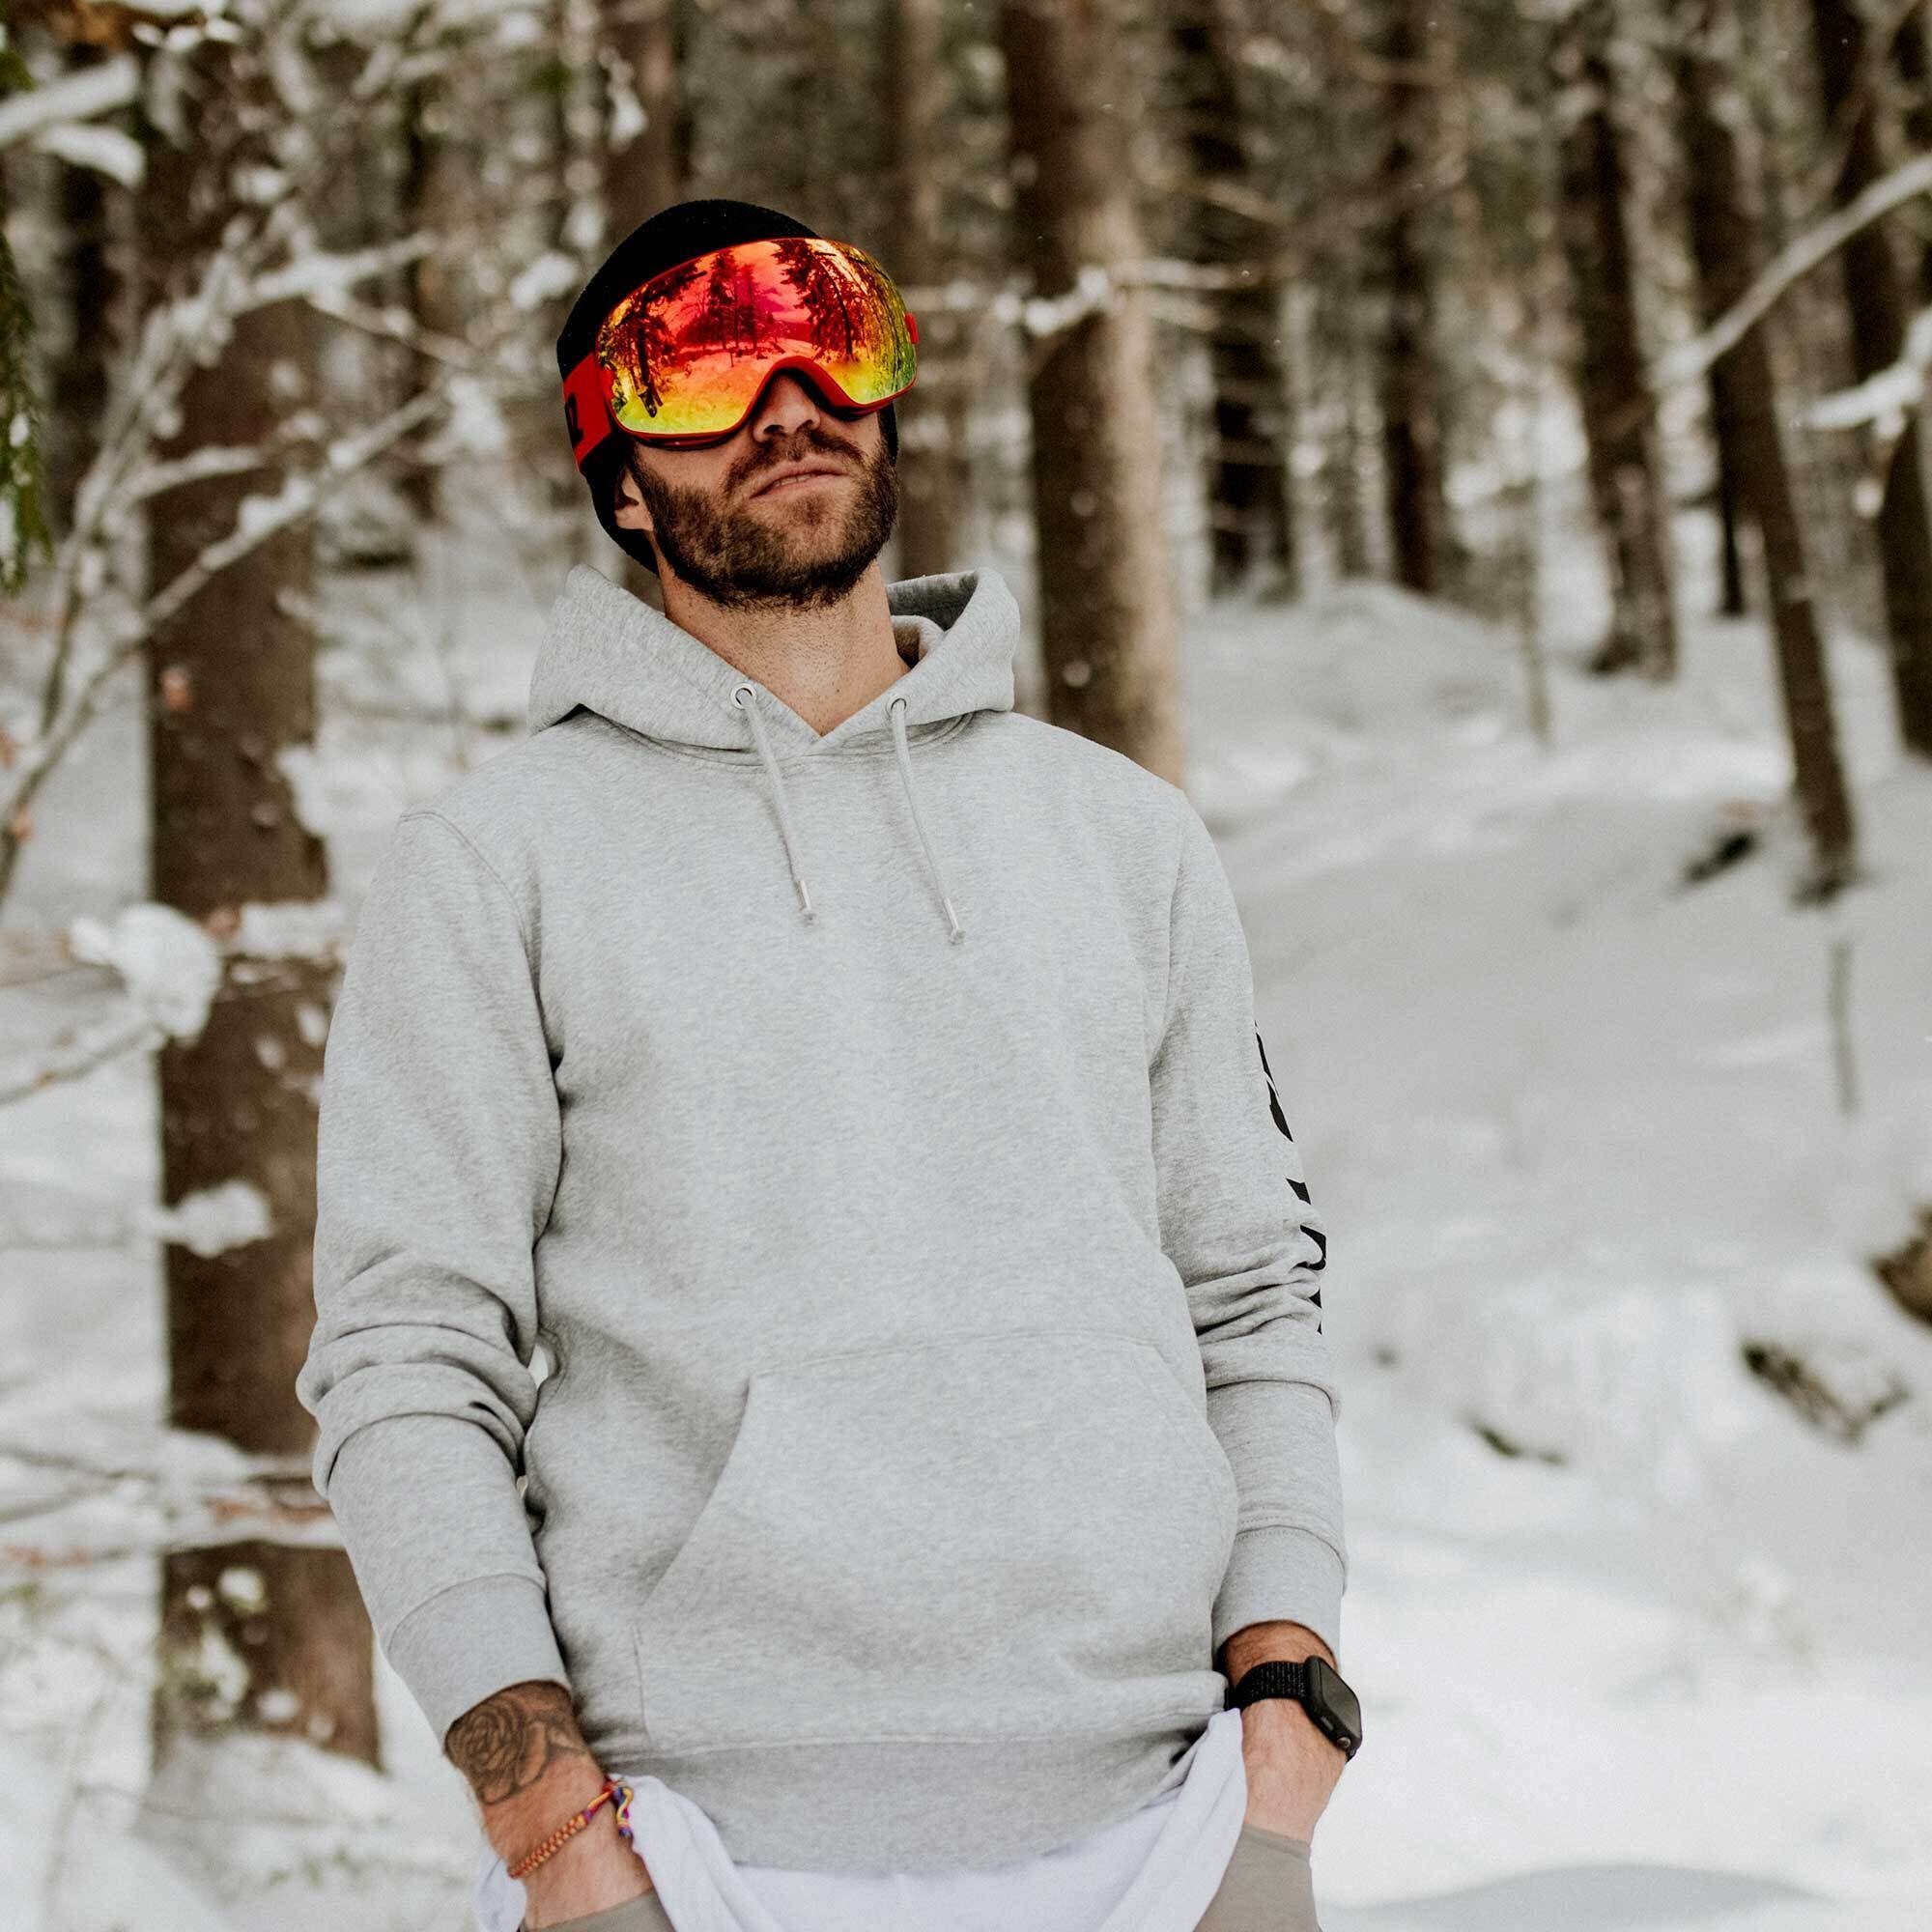 Skibrille XTRM-SUMMIT, Jugendliche Premium-Ski- YEAZ und Erwachsene Snowboardbrille und für